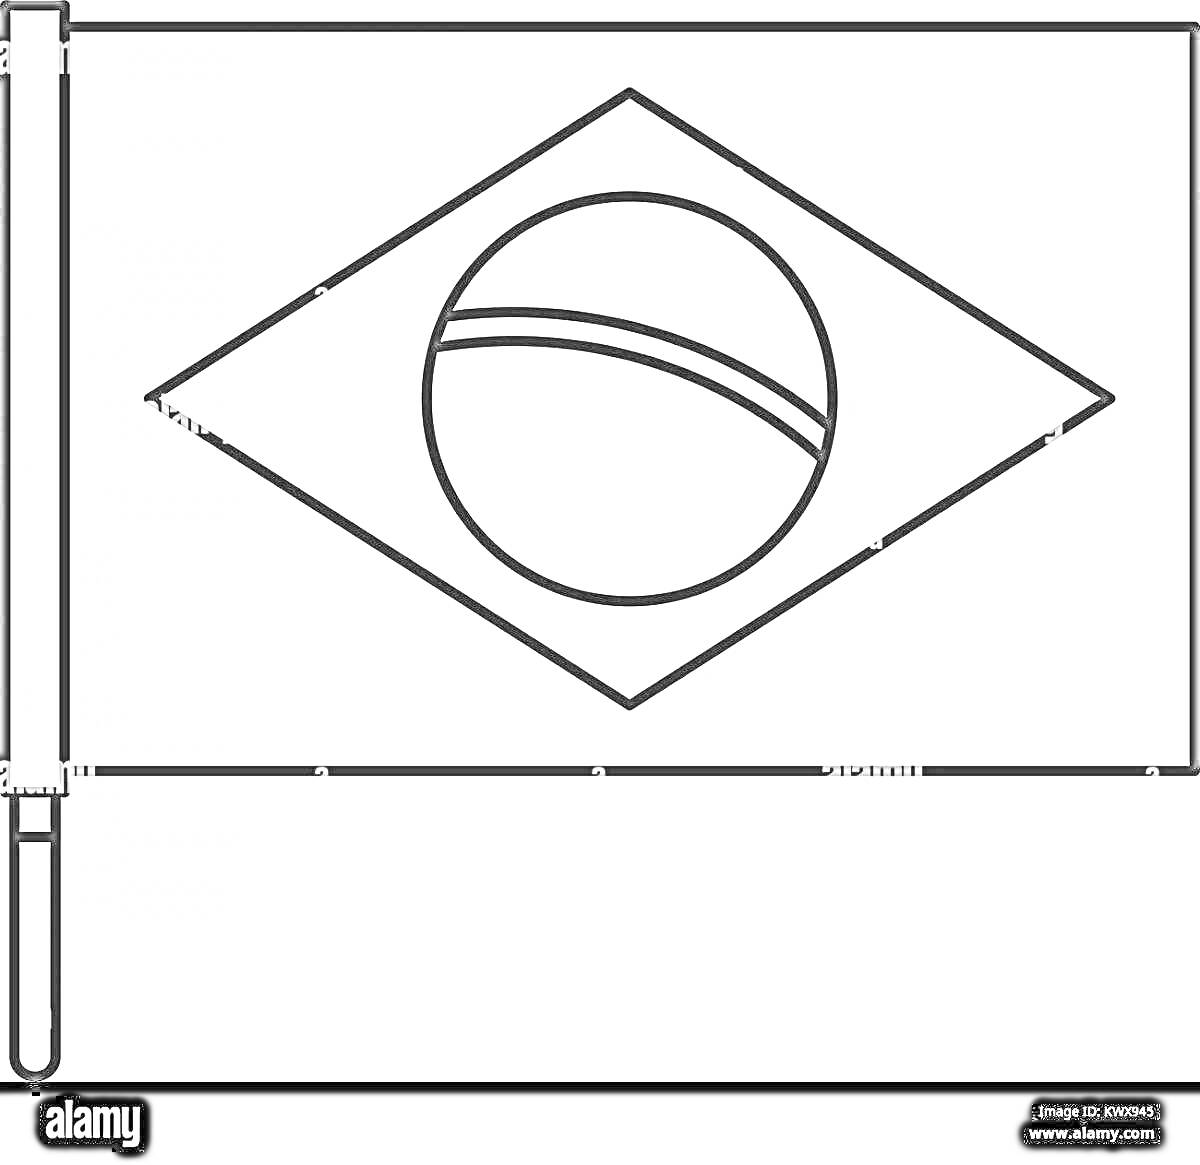 Раскраска с изображением флага Бразилии с диагональным квадратом и кругом, пересекаемым полосой, на флагштоке